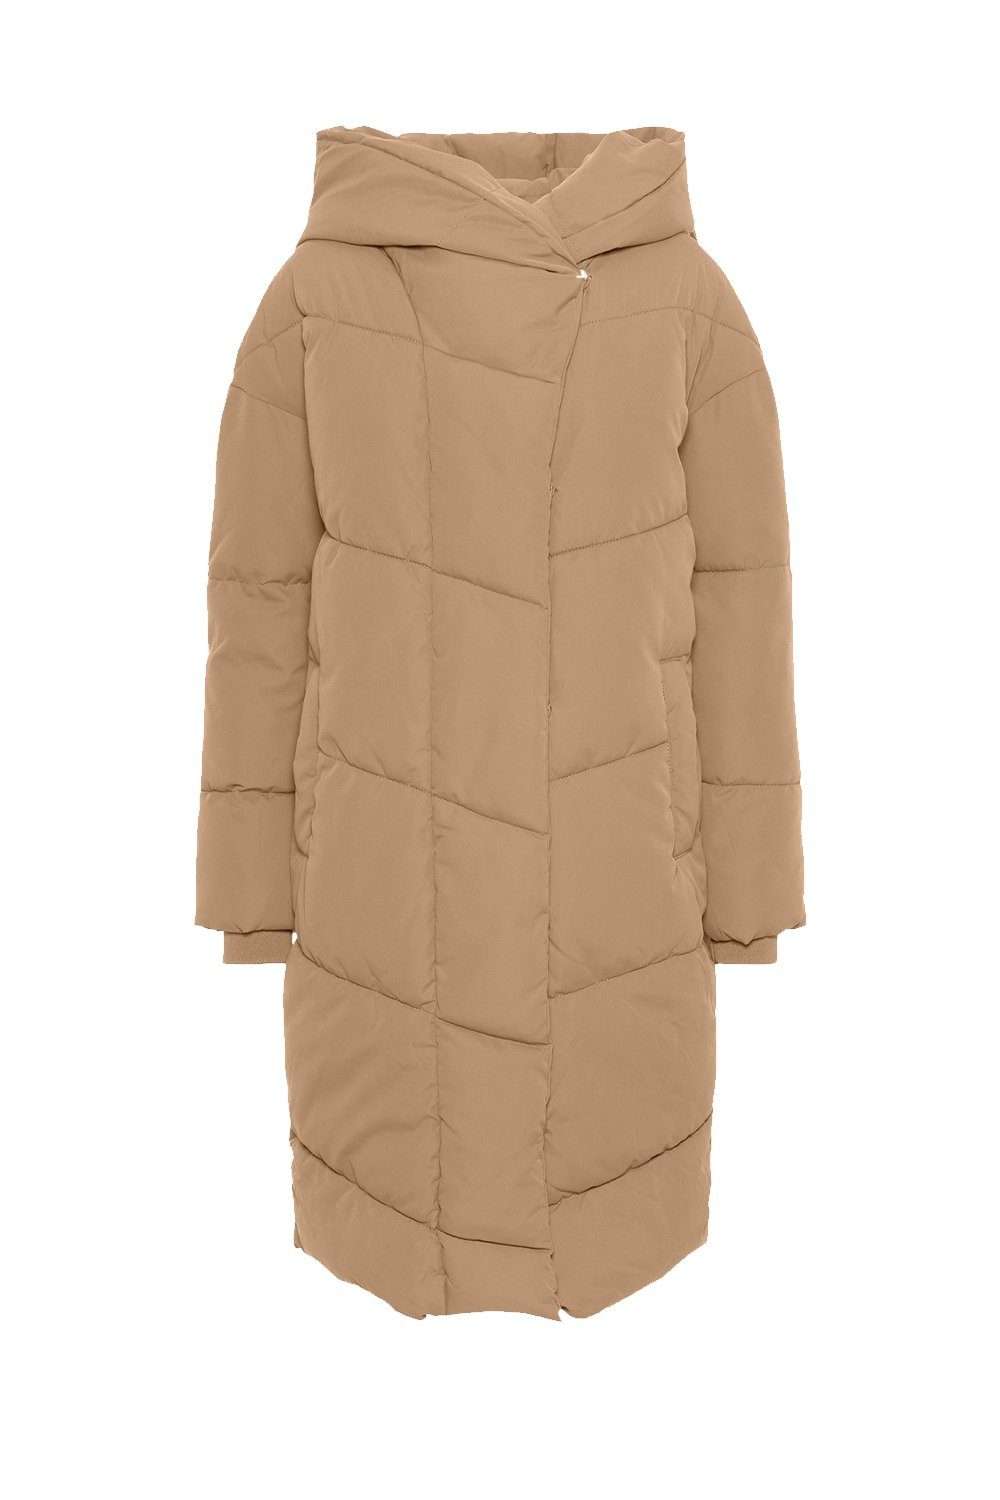 Зимняя куртка длинная утепленная зимняя куртка NMTALLY оверсайз-парка с капюшоном (1 шт.) 3802 бежевого цвета